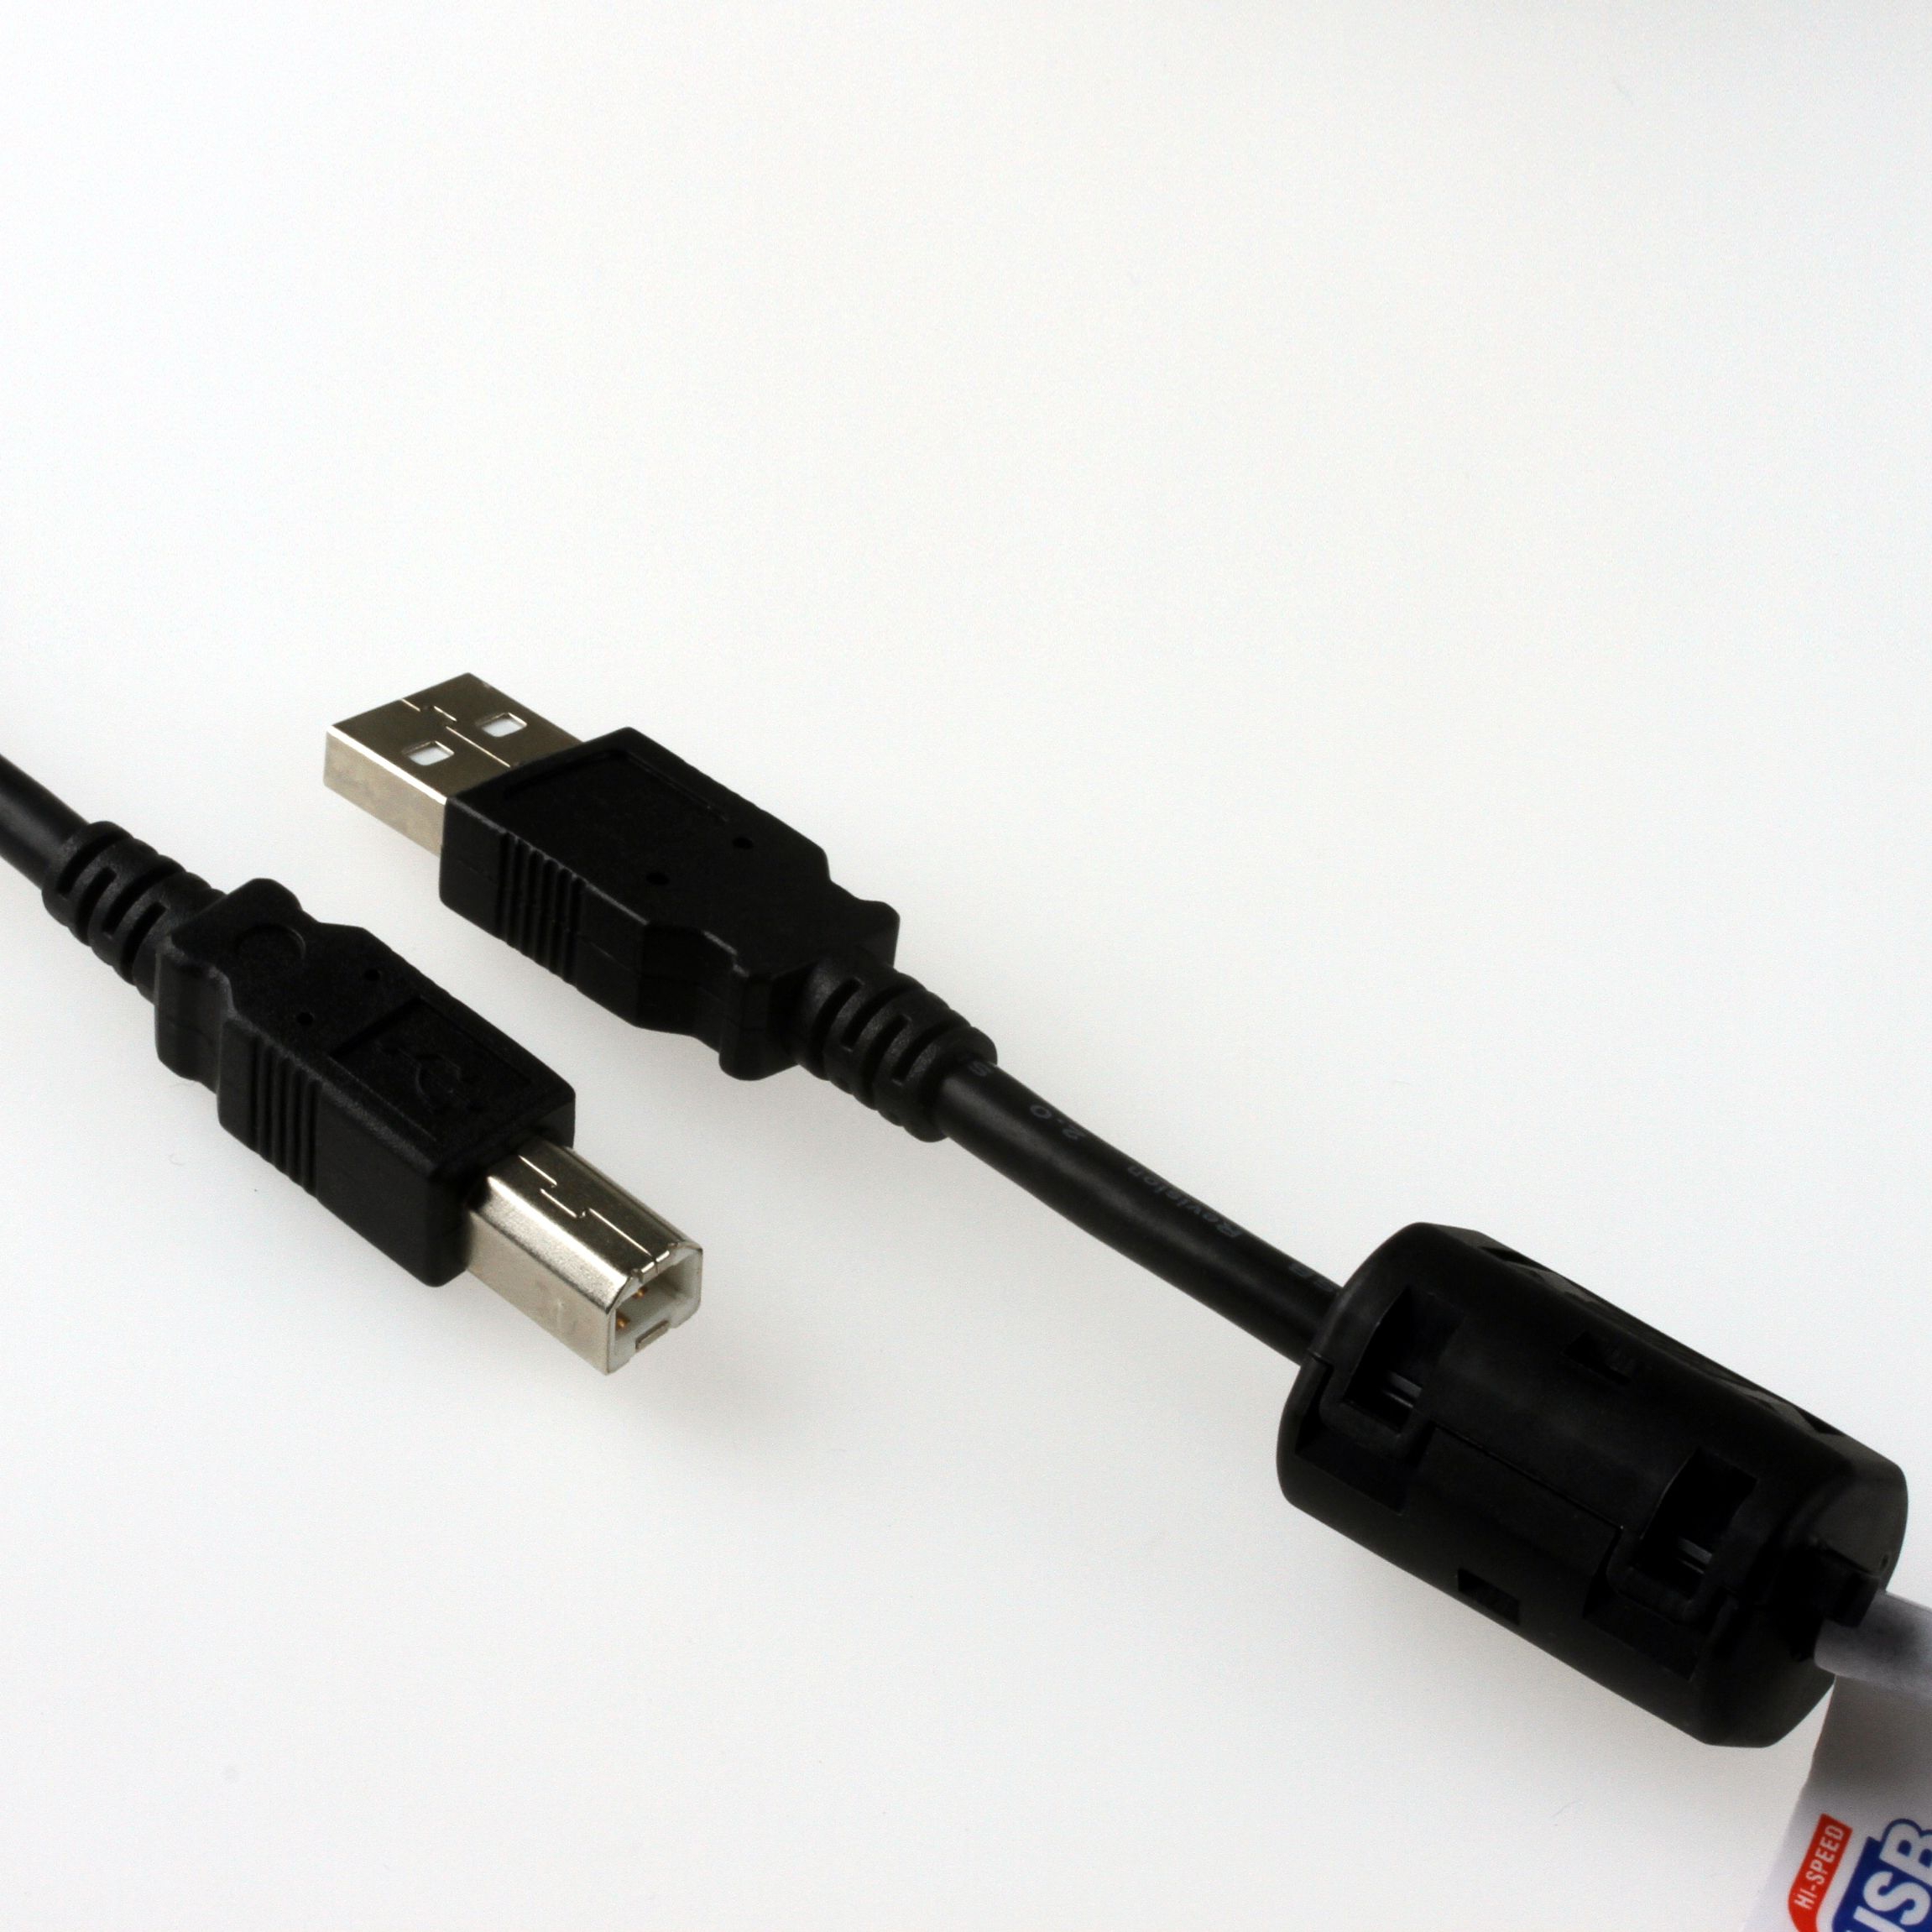 USB 2.0 Industriekabel mit verstärkten Poweradern, PREMIUM+ mit Ferritkern, 3m